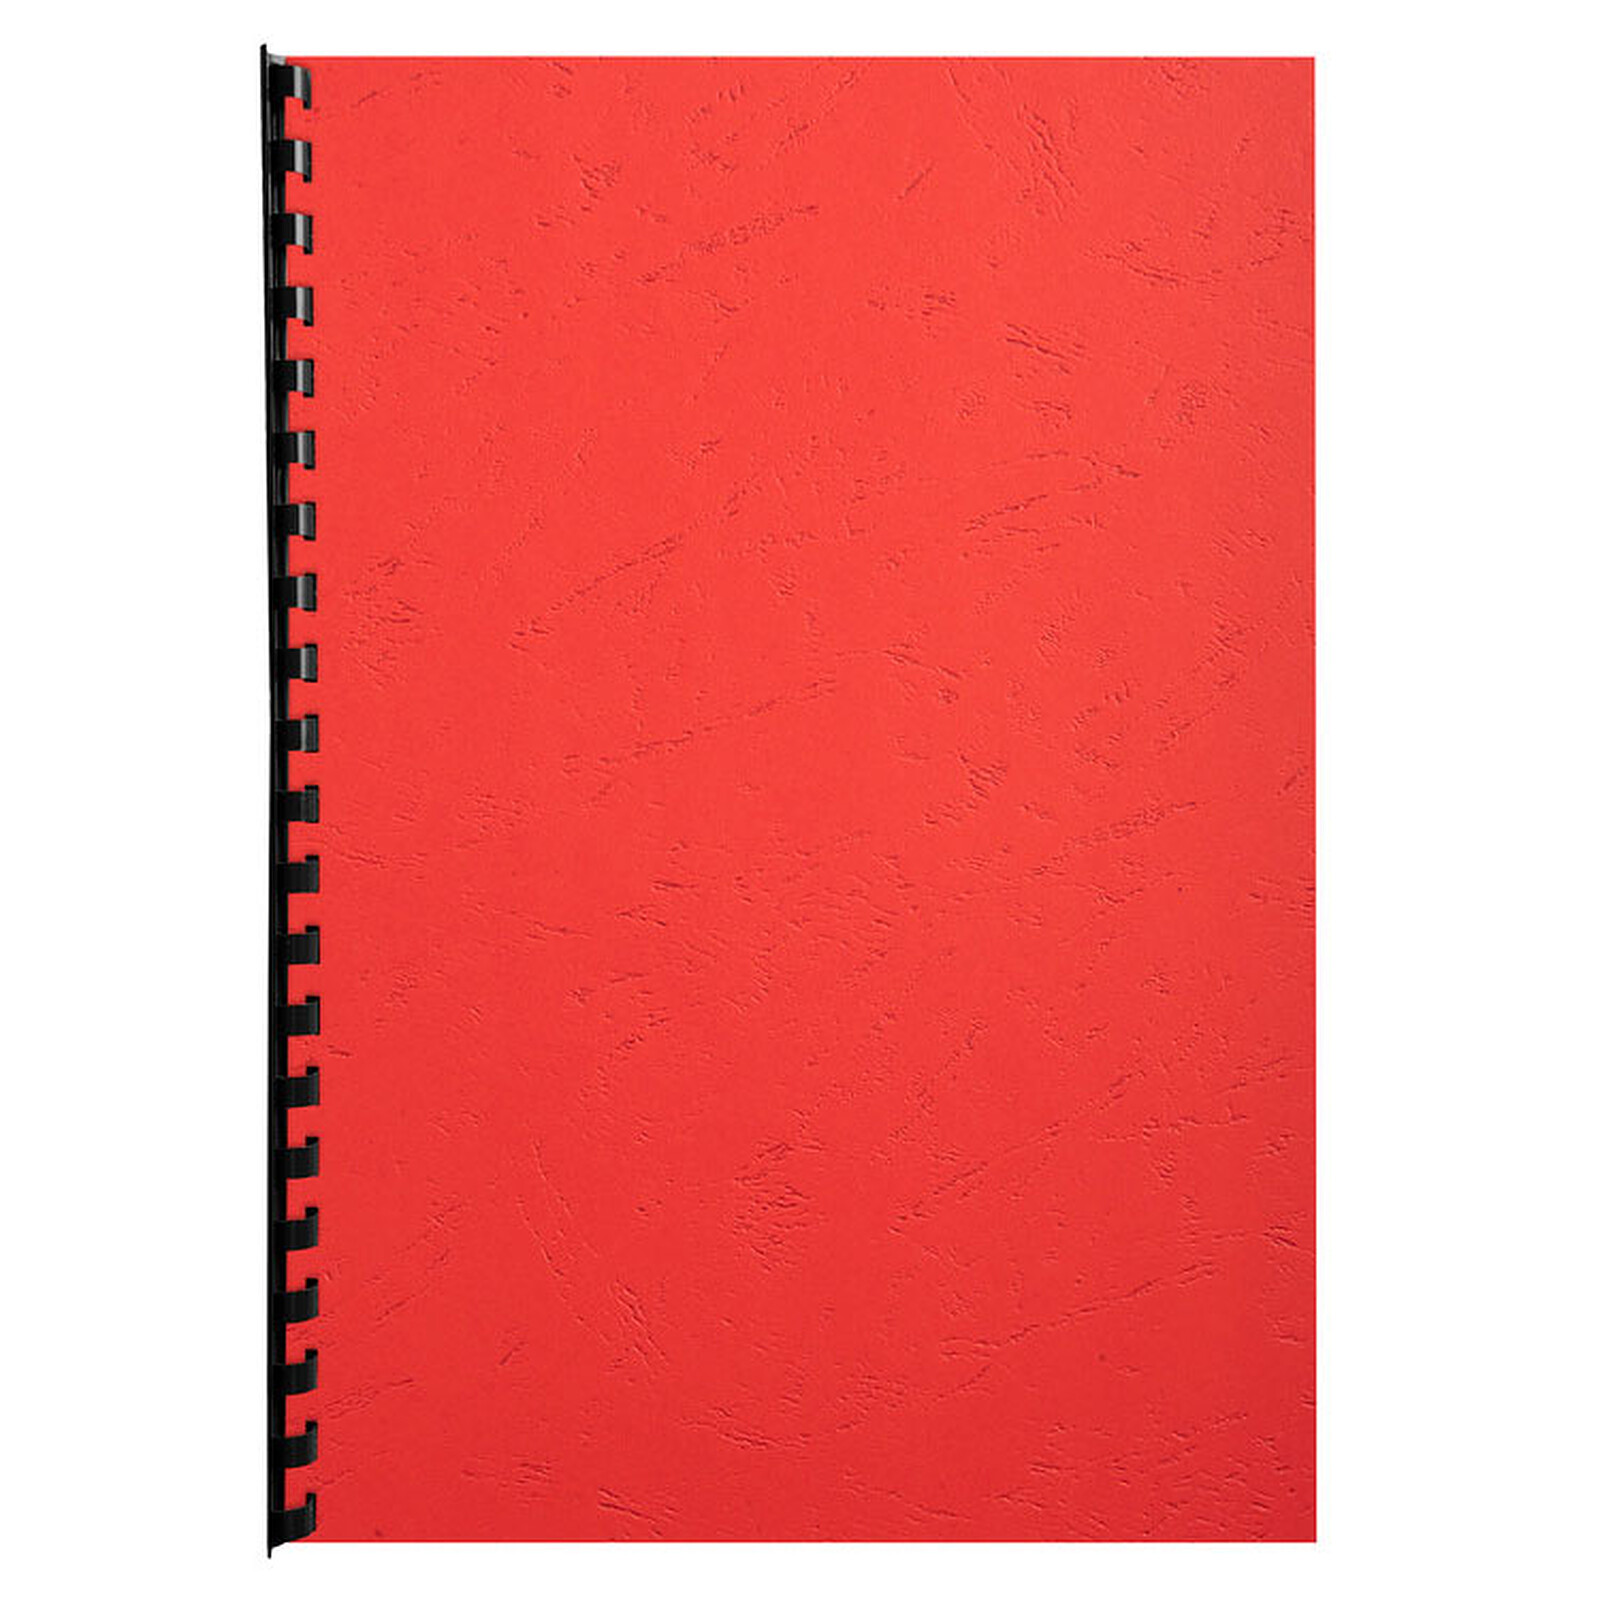 Rouge un Paquet de 25 Couvertures Grain cuir 270g pour Reliure format 21x29 Exacompta 27805E 7 cm 